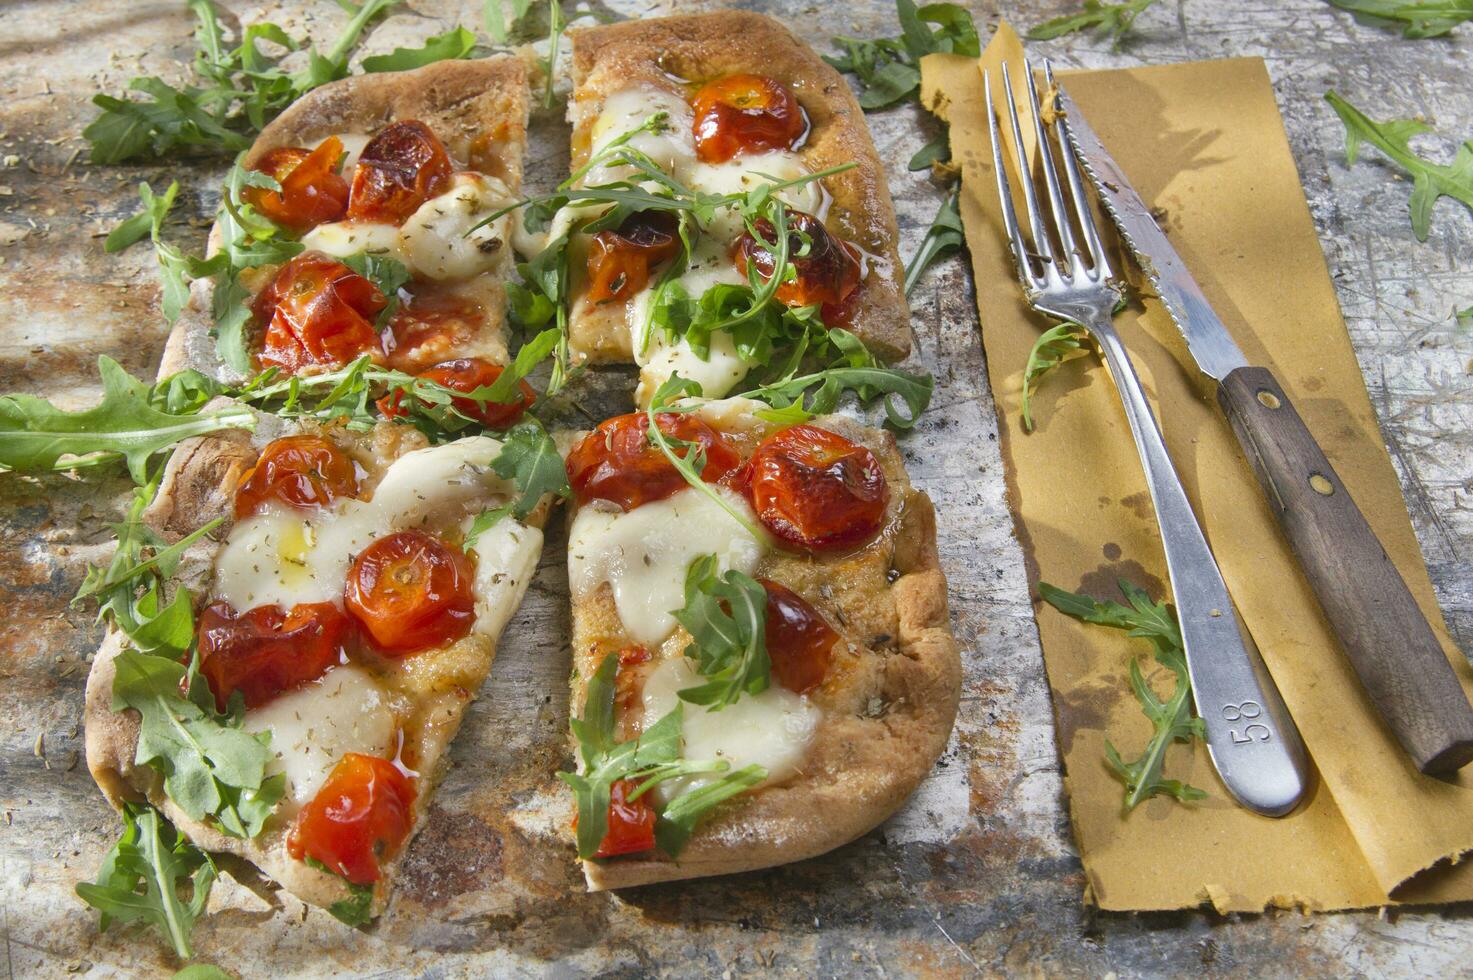 Pizza mit Tomaten und Rucola foto